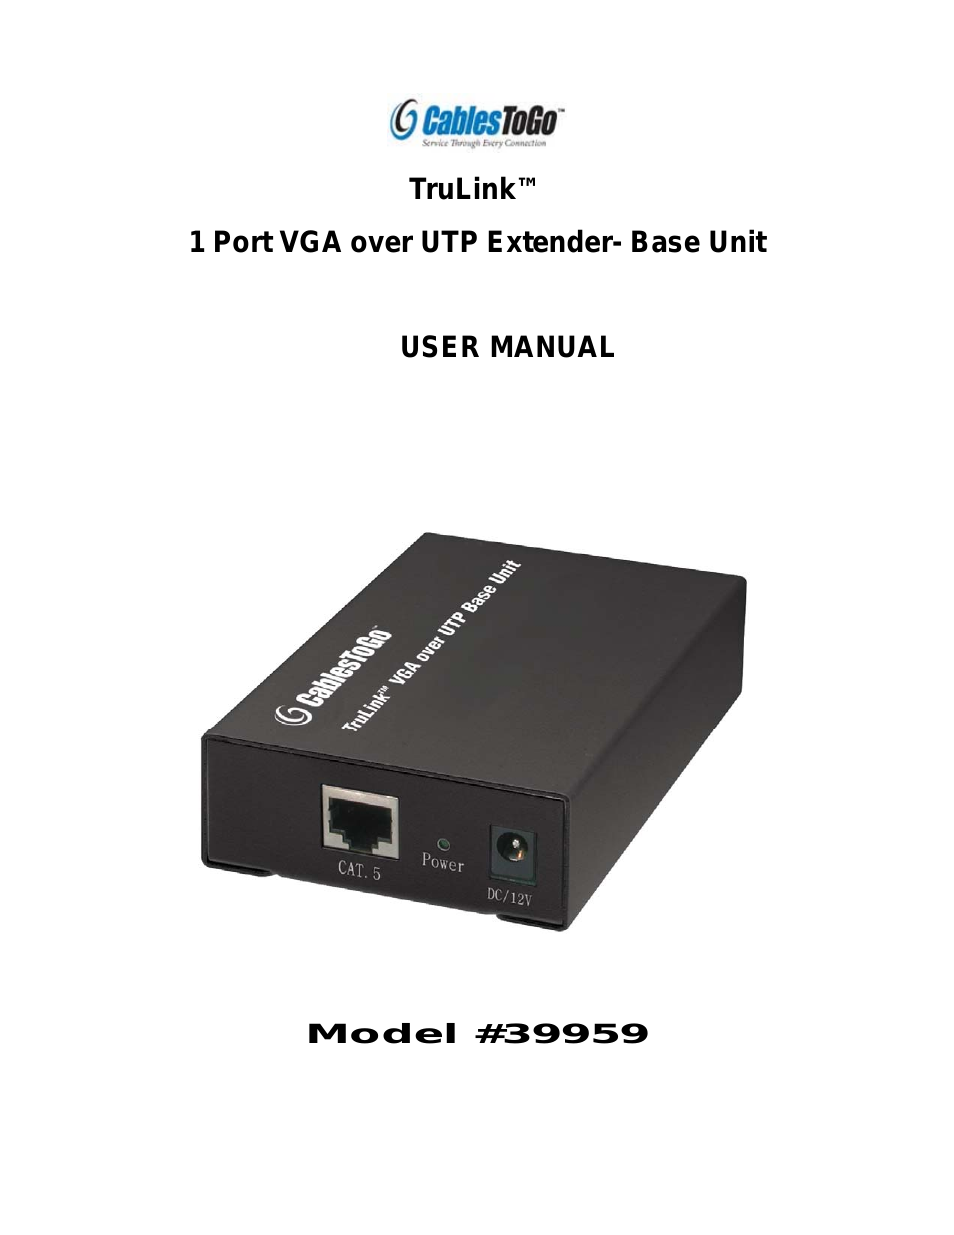 39959 1 Port VGA over UTP Extender- Base Unit